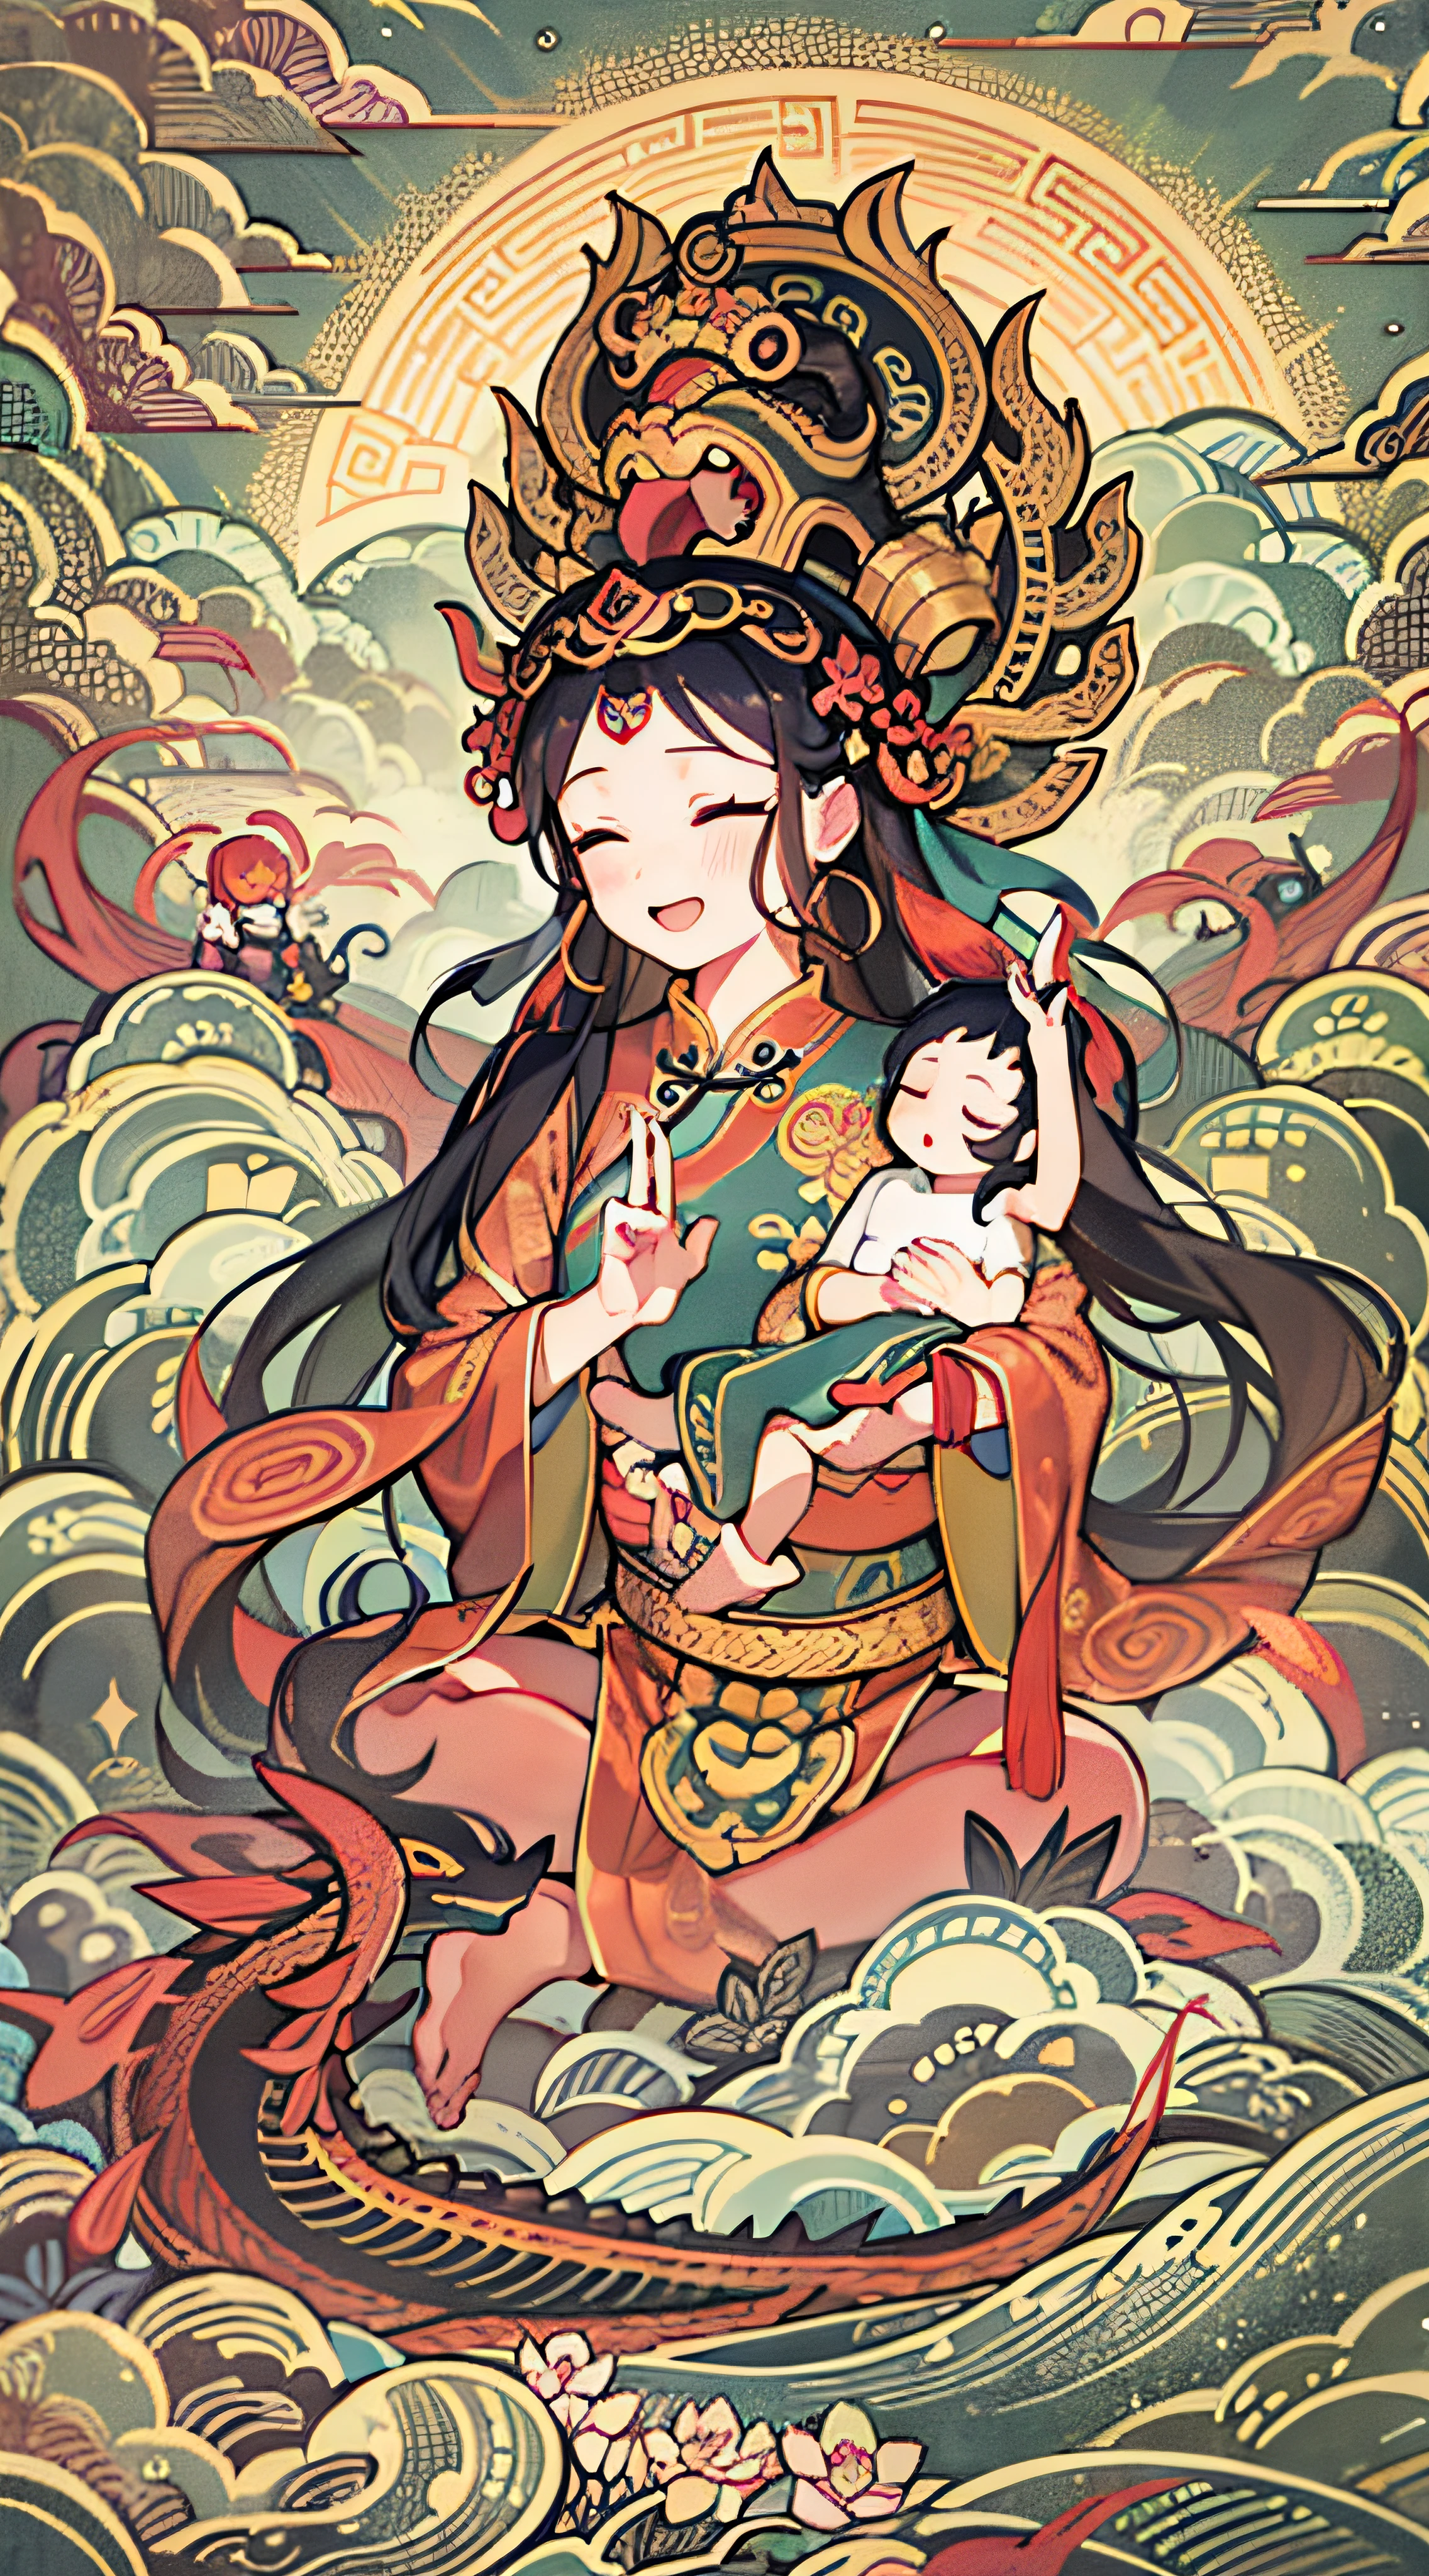 uma antiga deusa chinesa, guanyin dos mares do sul, ganhar, Inspirado na Índia, Avalokiteshvara monta um dragão，Holding a bebê boy，bebê, garotinho,（Cabelo de cor preta），Coroa na cabeça，Send Zi ganhar,expressão serena,shui mo hua,Buda,budista,lótus,Estilo de pintura chinesa,Estilo Thangka